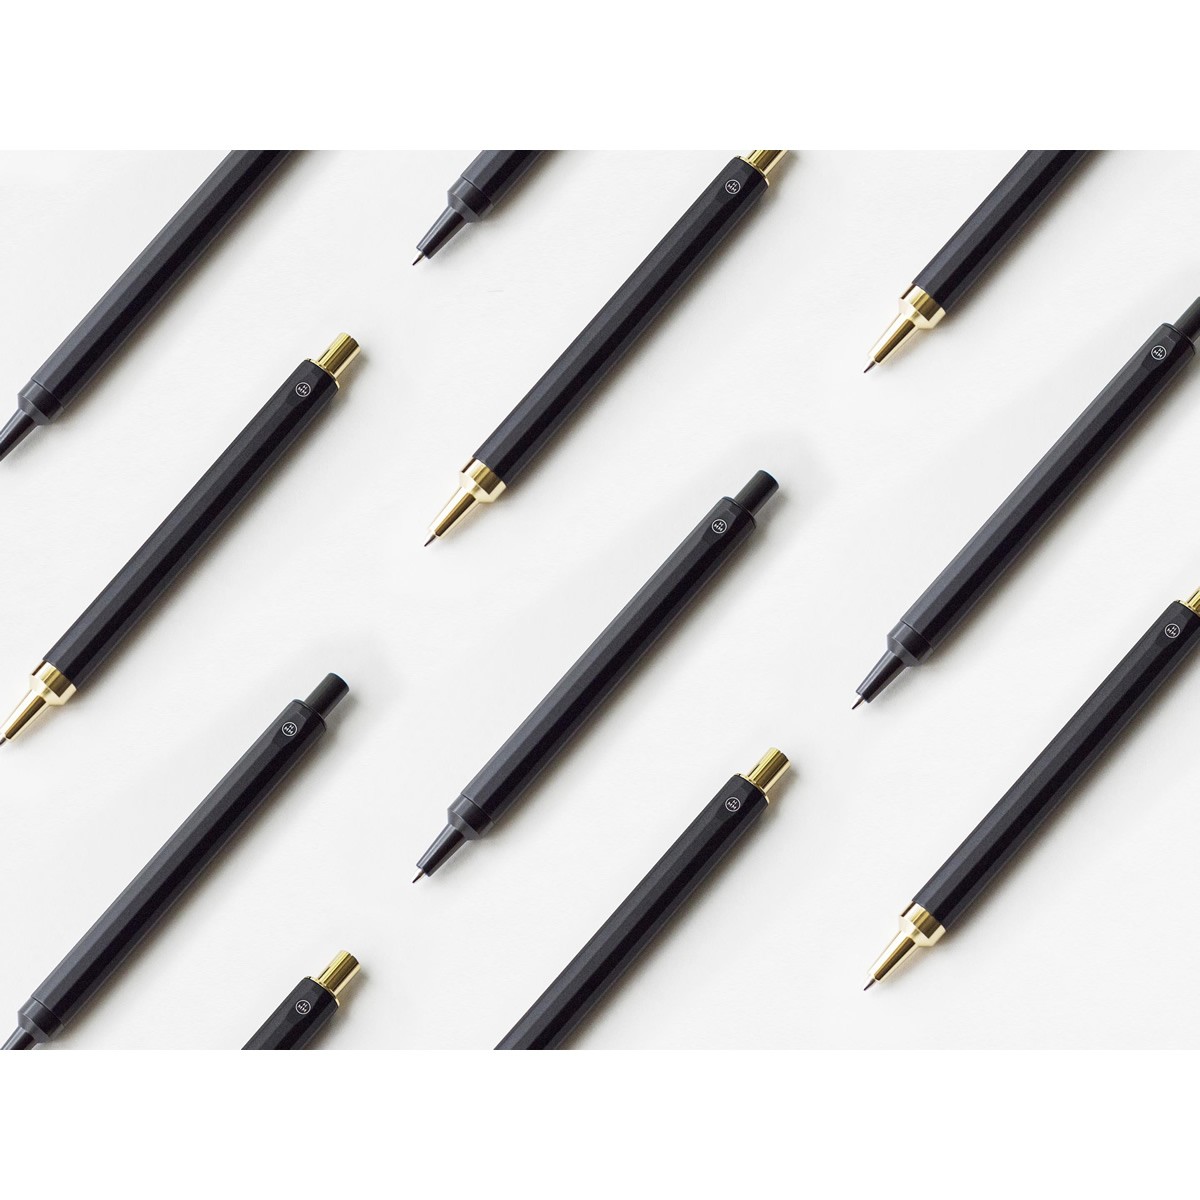 Μηχανικό Μολύβι Pencil BK Μαύρο